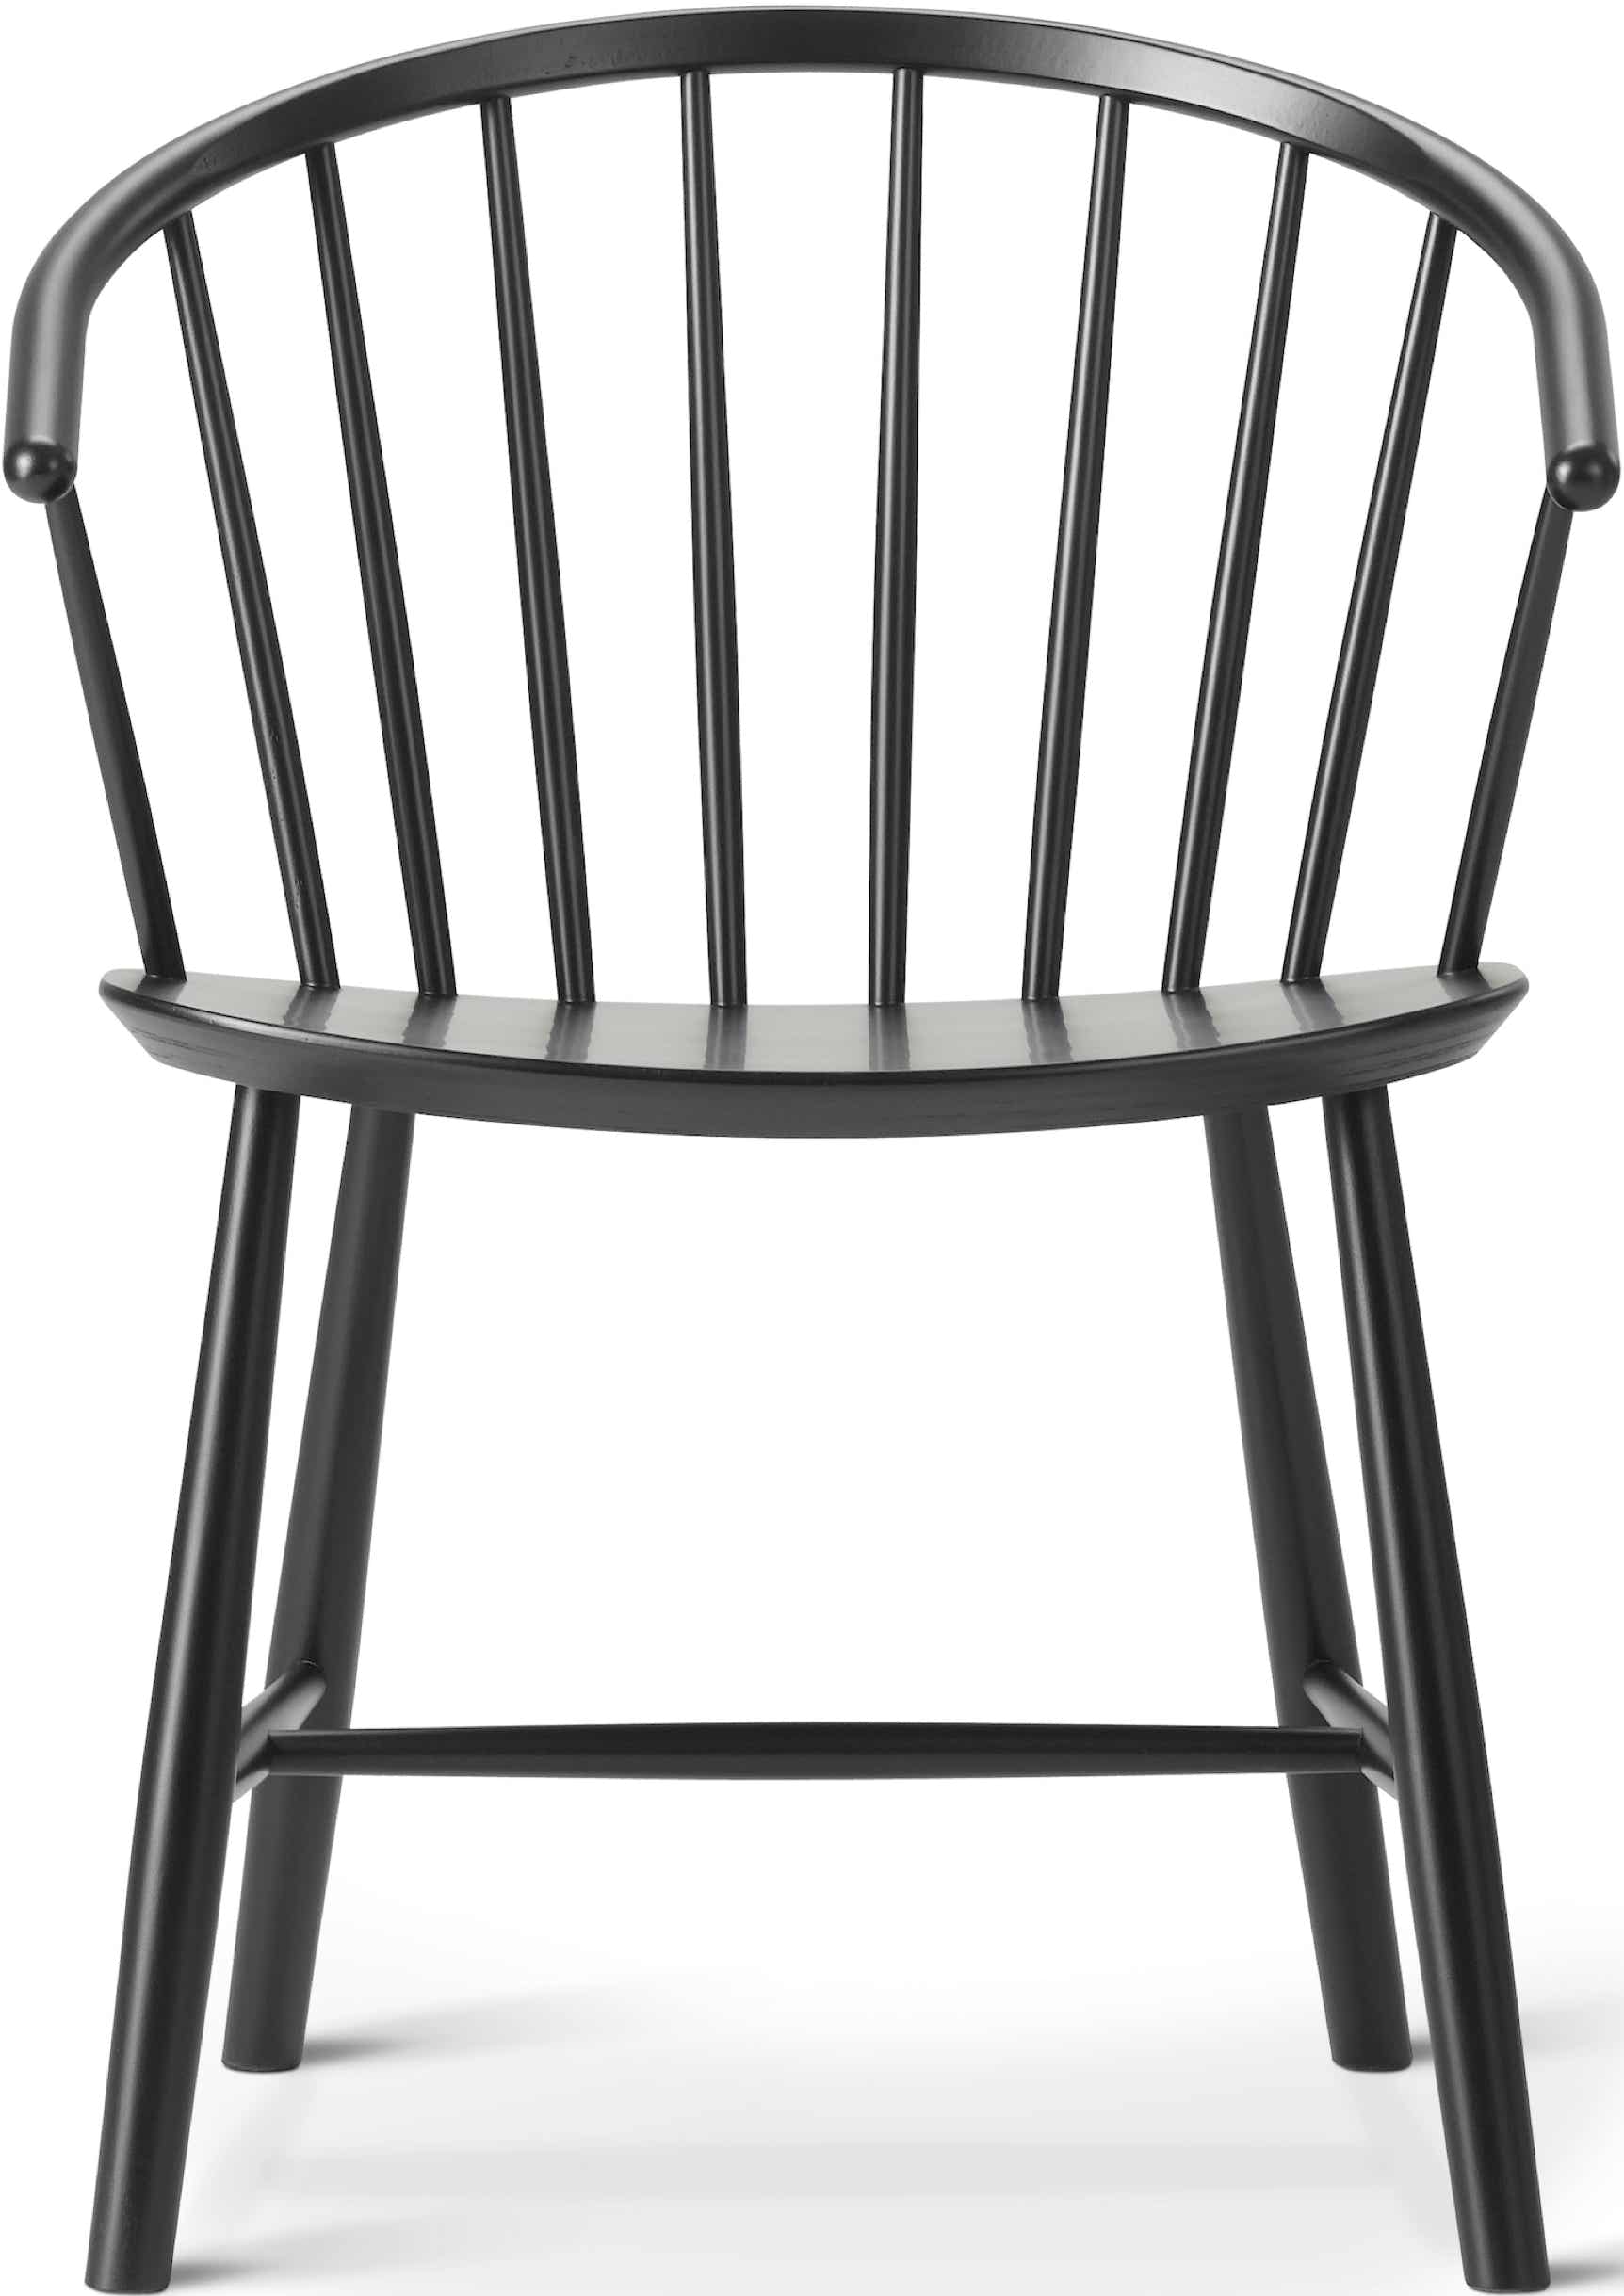 J64 Chair Ejvind A. Johansson, 1957